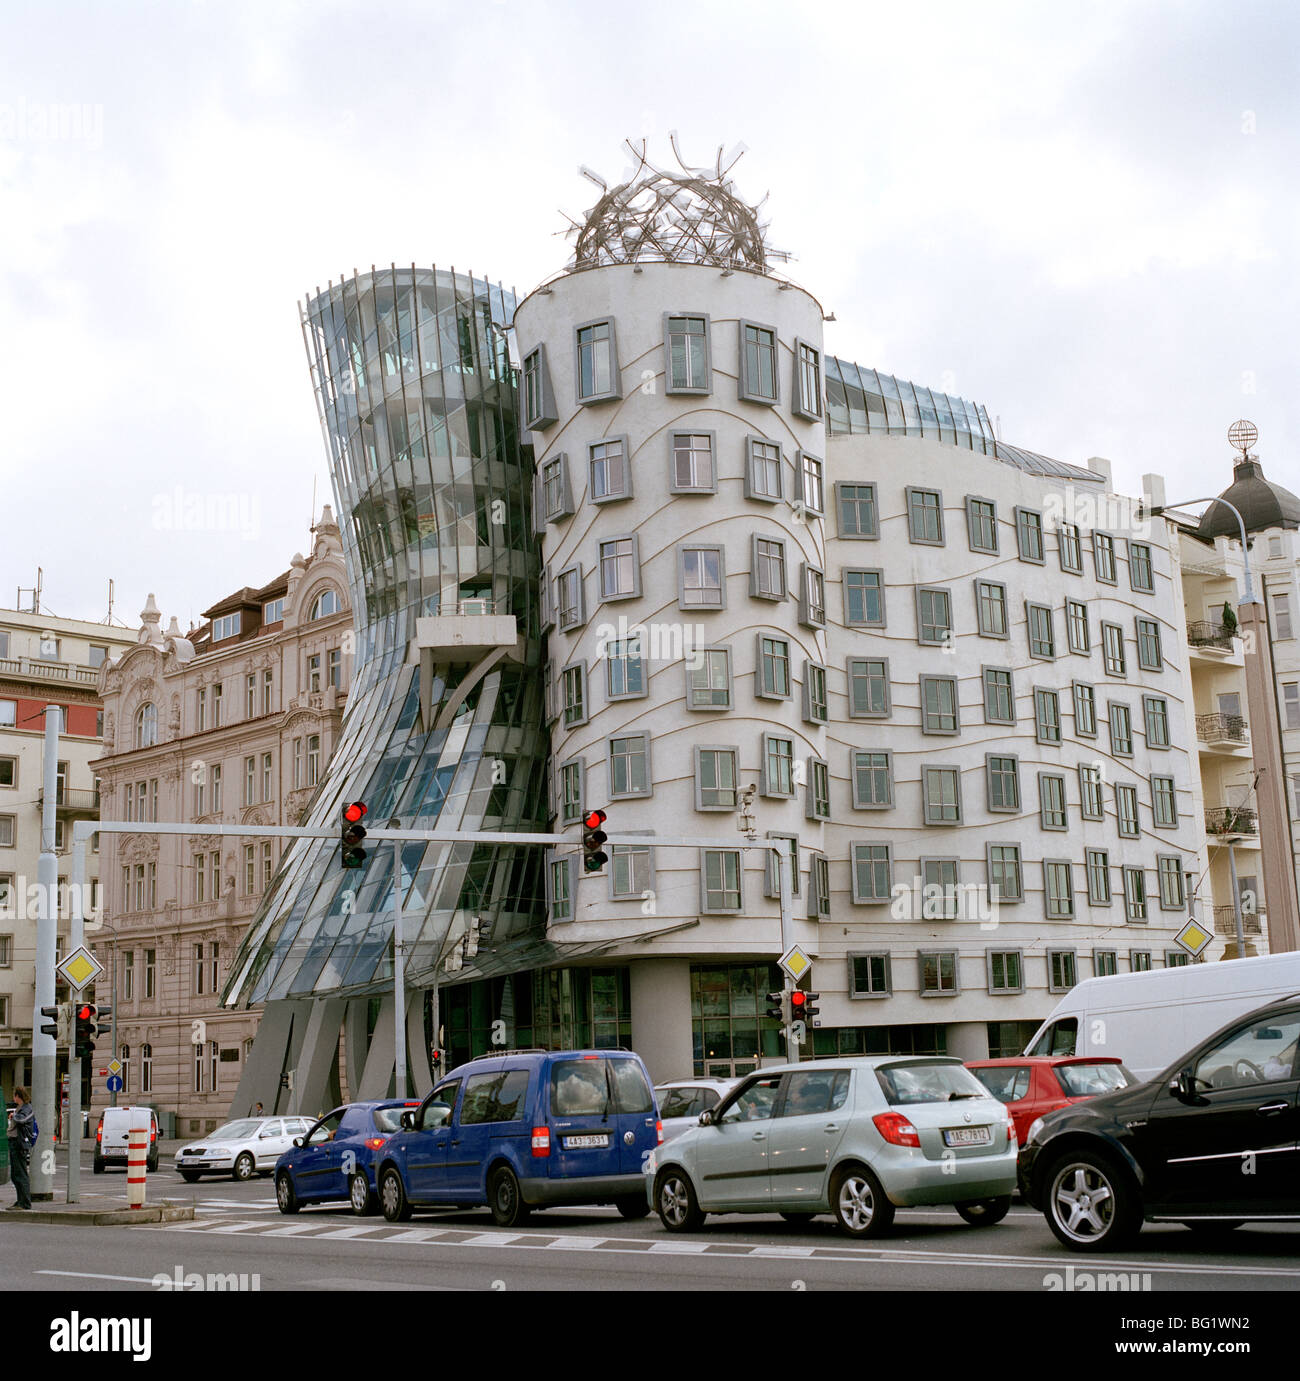 Viaggi nel mondo. Il Frank Gehry la Casa Danzante o Fred and Ginger edificio di Nove Mesto a Praga nella Repubblica Ceca in Europa Orientale. Cultura Foto Stock